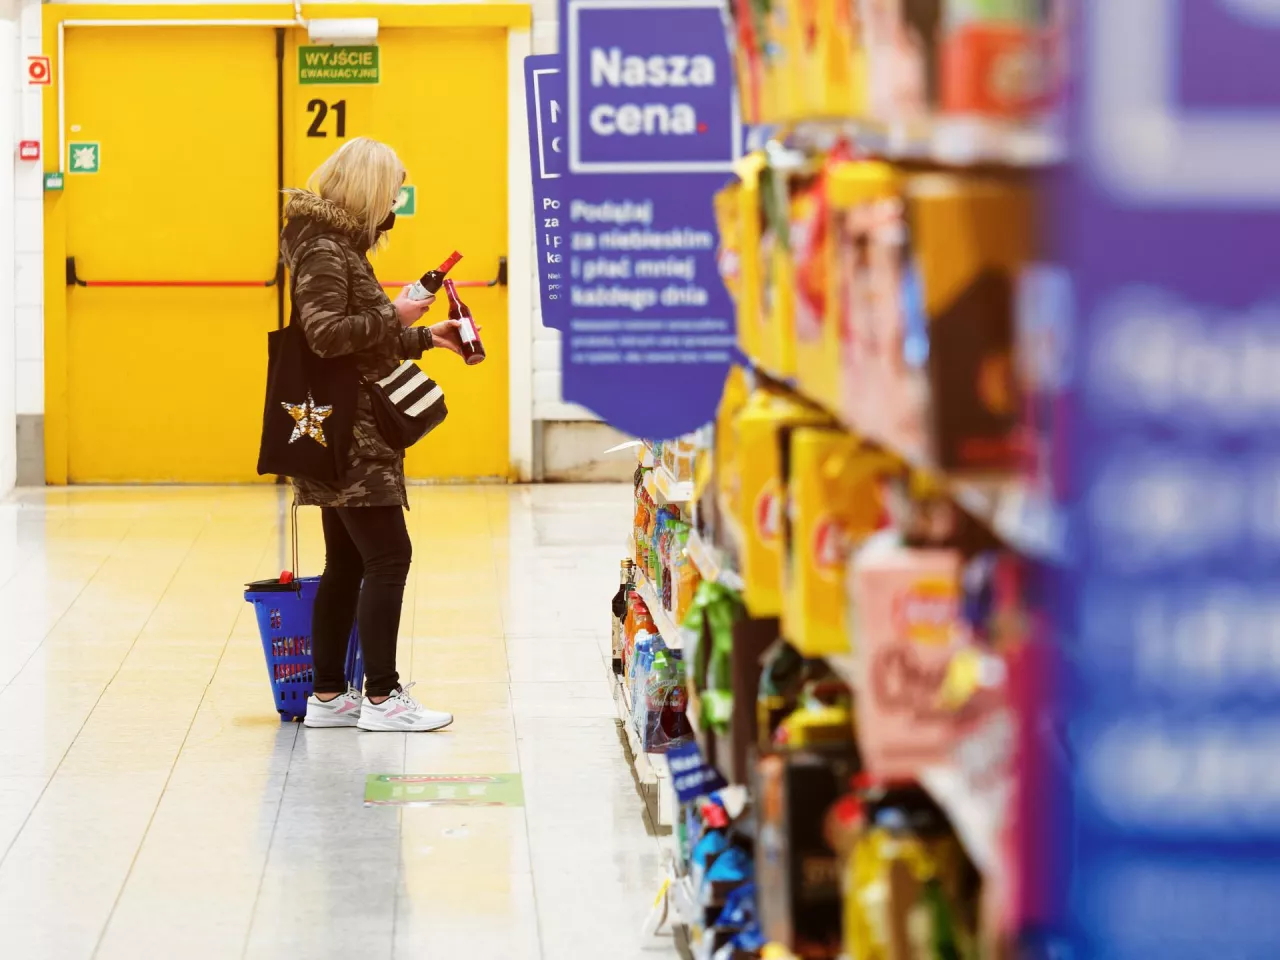 68 proc. polskich konsumentów czuje się bezpiecznie podczas robienia tradycyjnych zakupów (fot. Łukasz Rawa/wiadomoscihandlowe.pl)